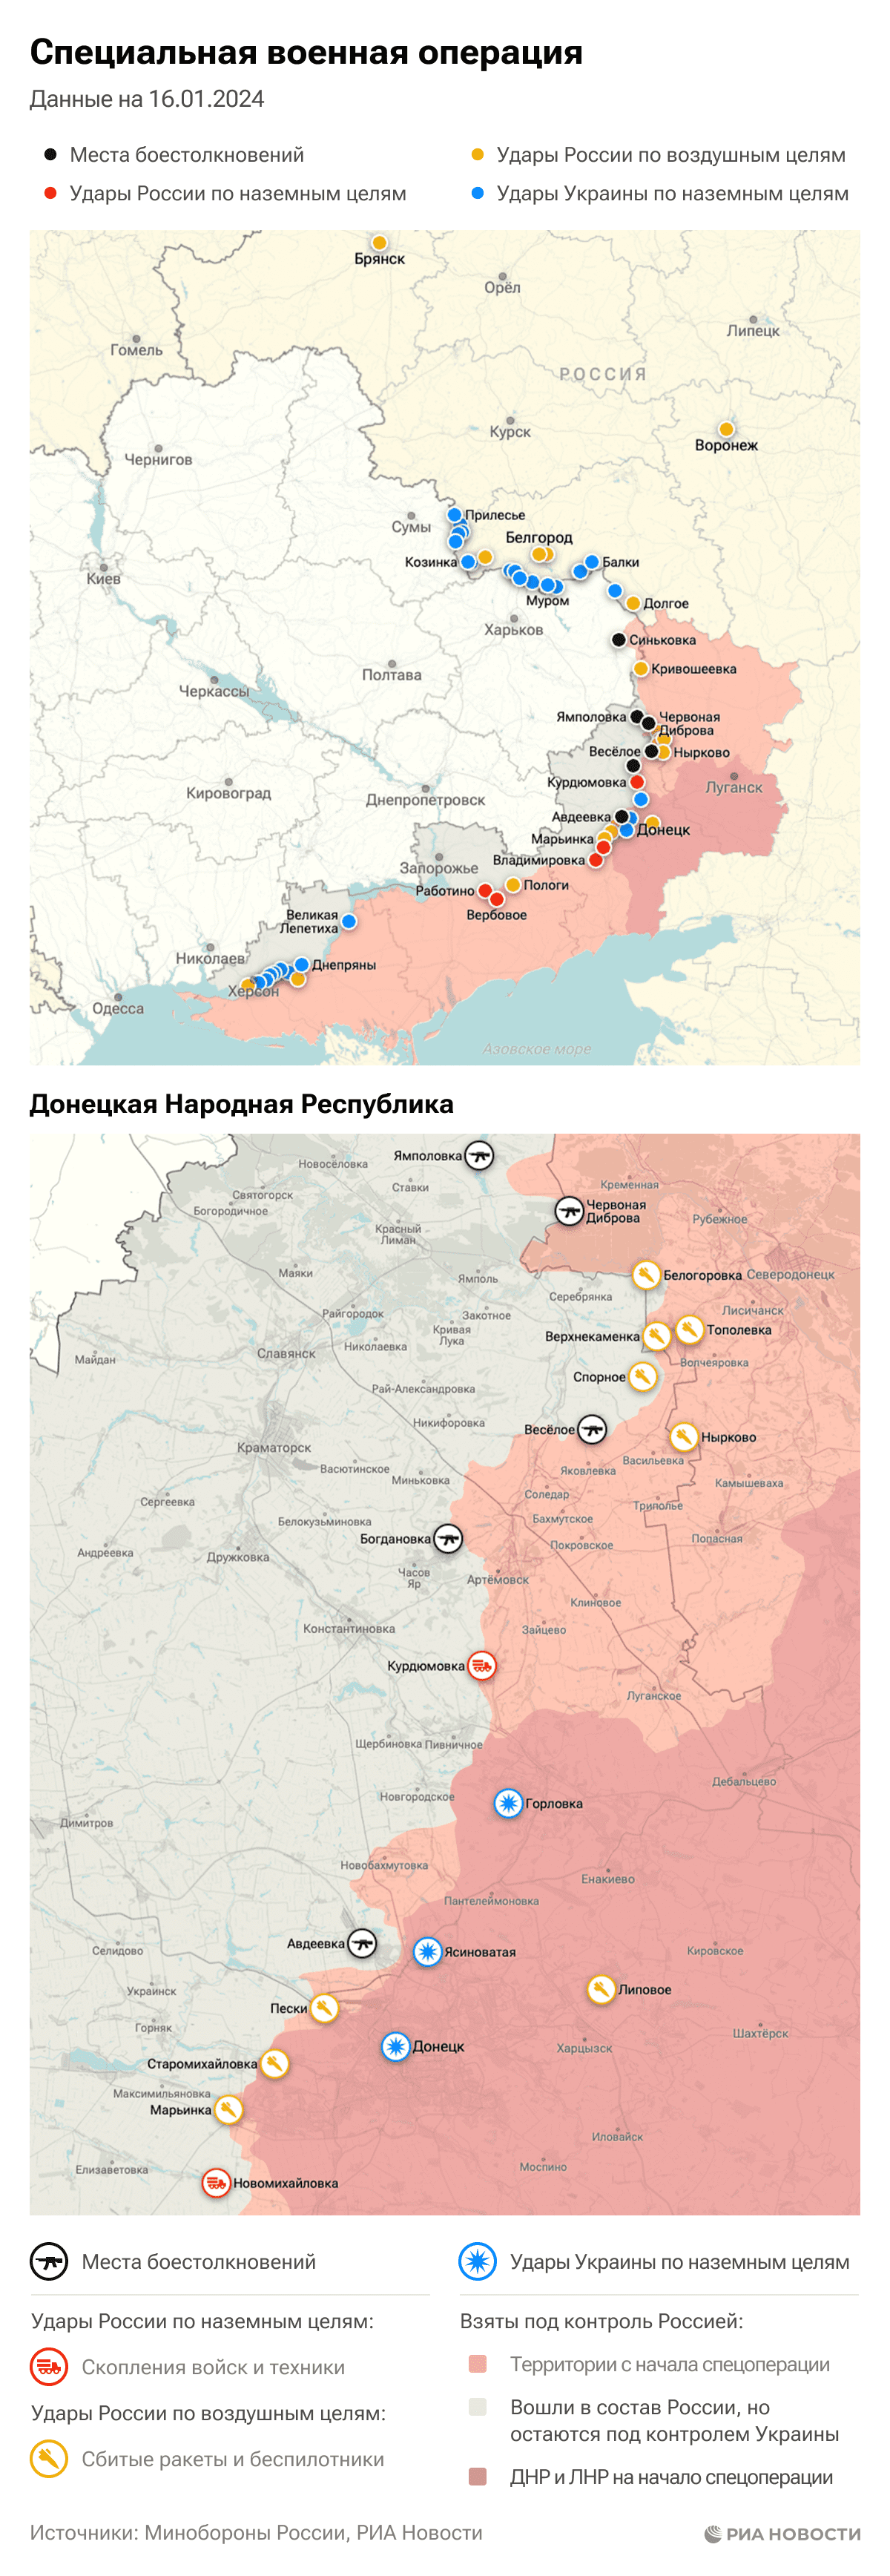 Карта спецоперации Вооруженных сил России на Украине на 16.01.2024